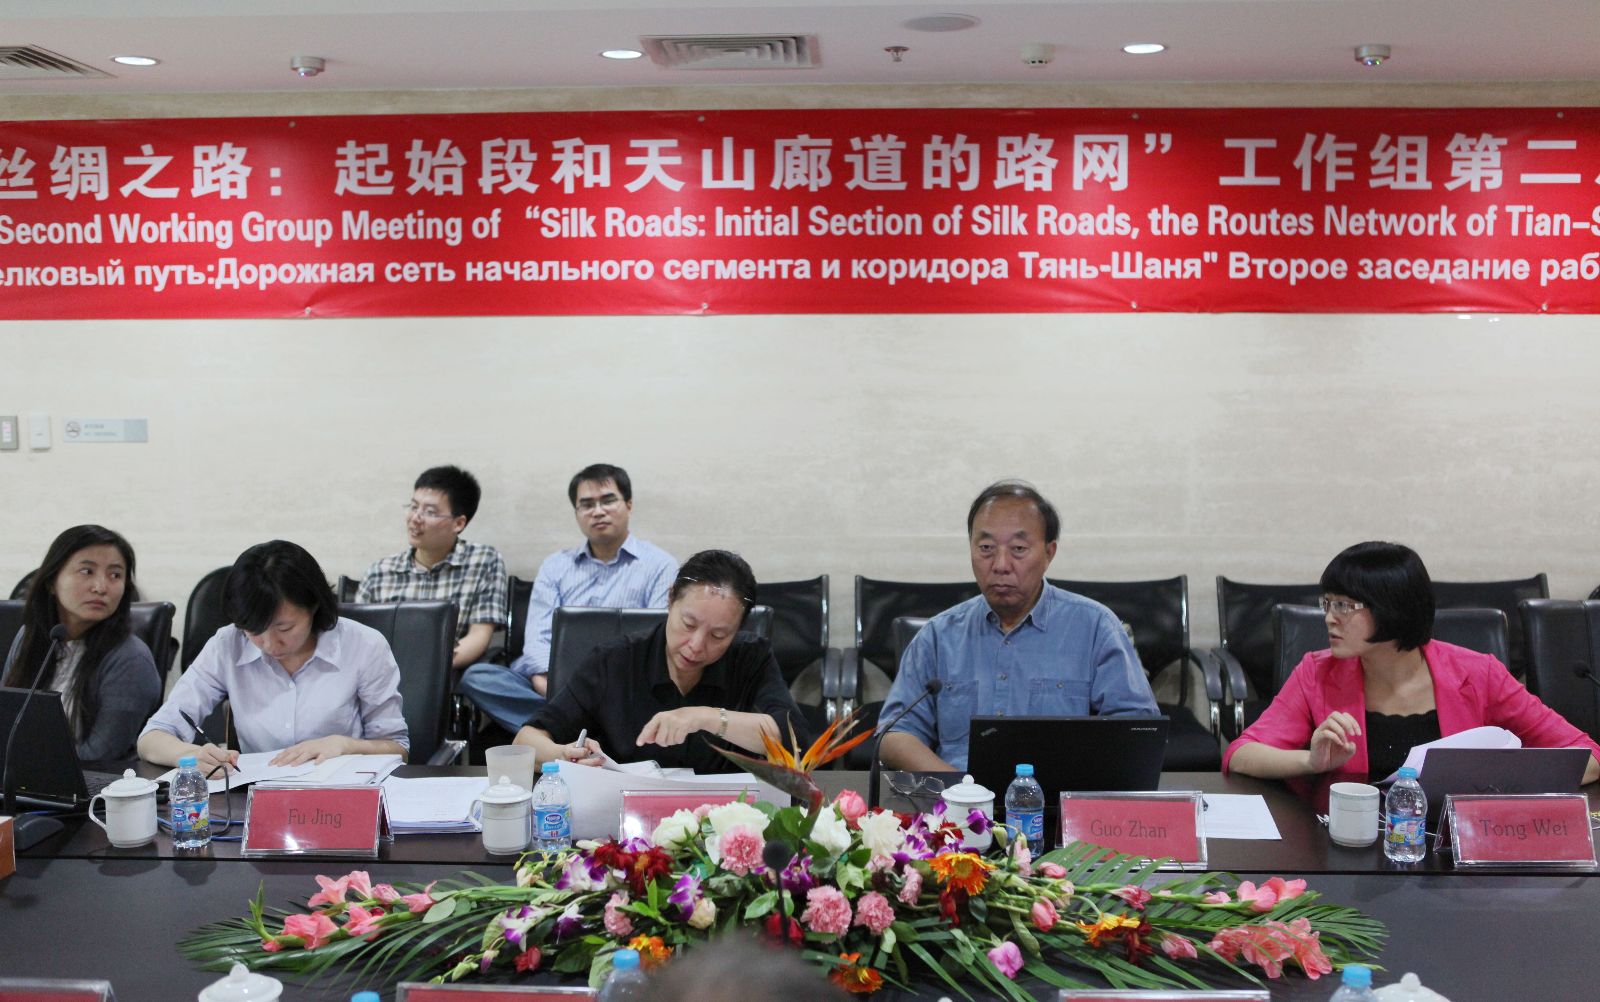 “丝绸之路：起始段和天山廊道的路网”工作组第二次会议在北京召开